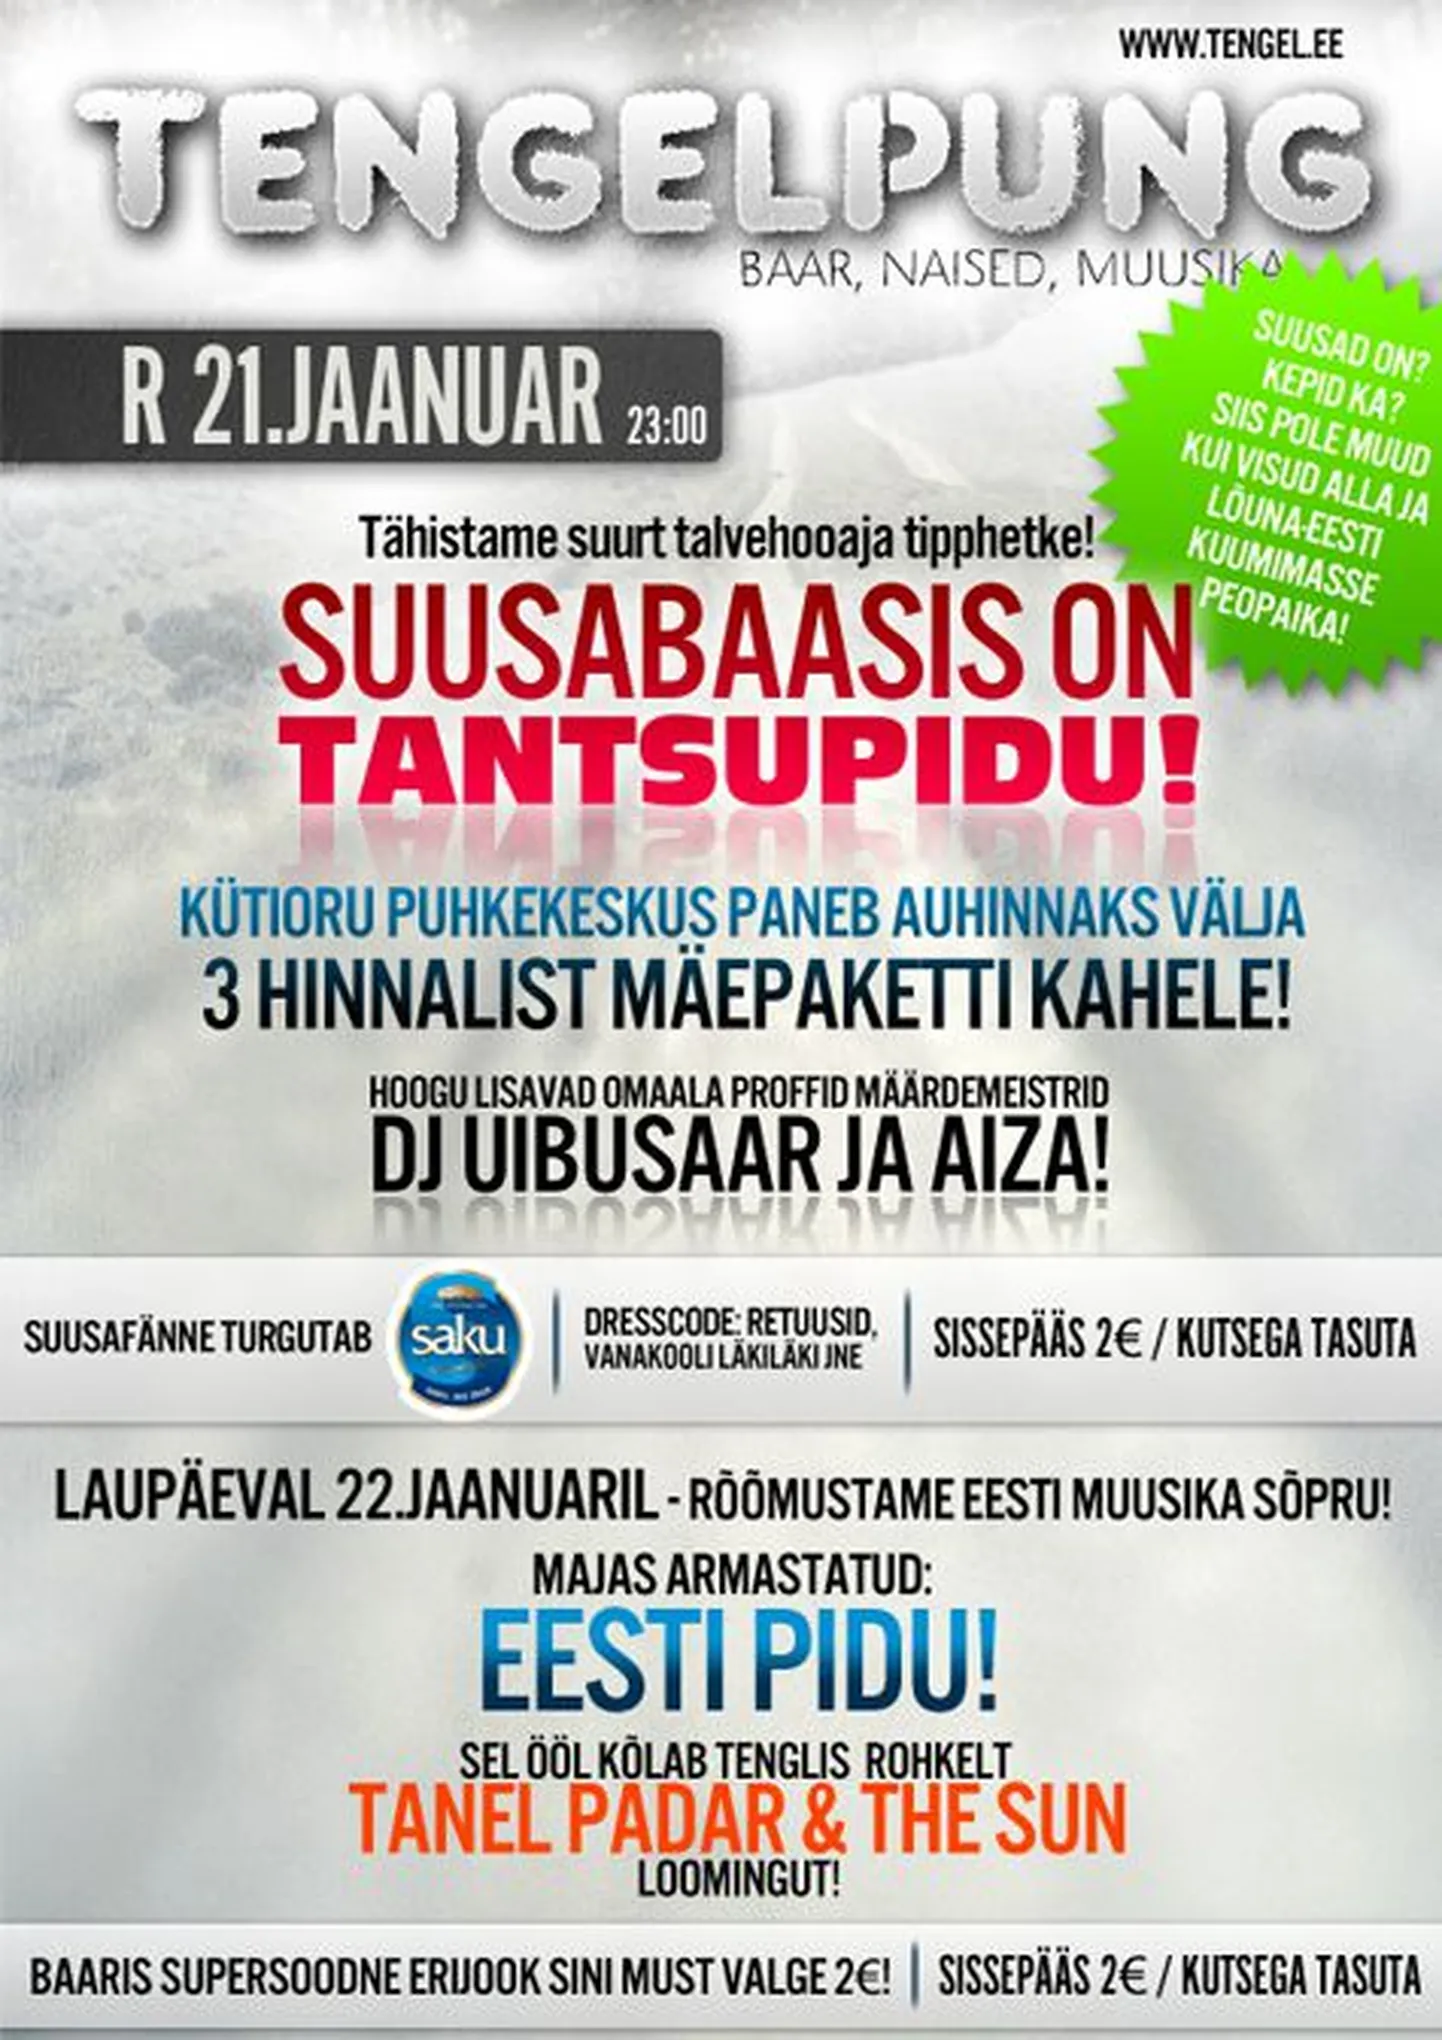 Lõuna-Eesti kuum peopaik Tengelpung kutsub sind reedel suusabaasi!